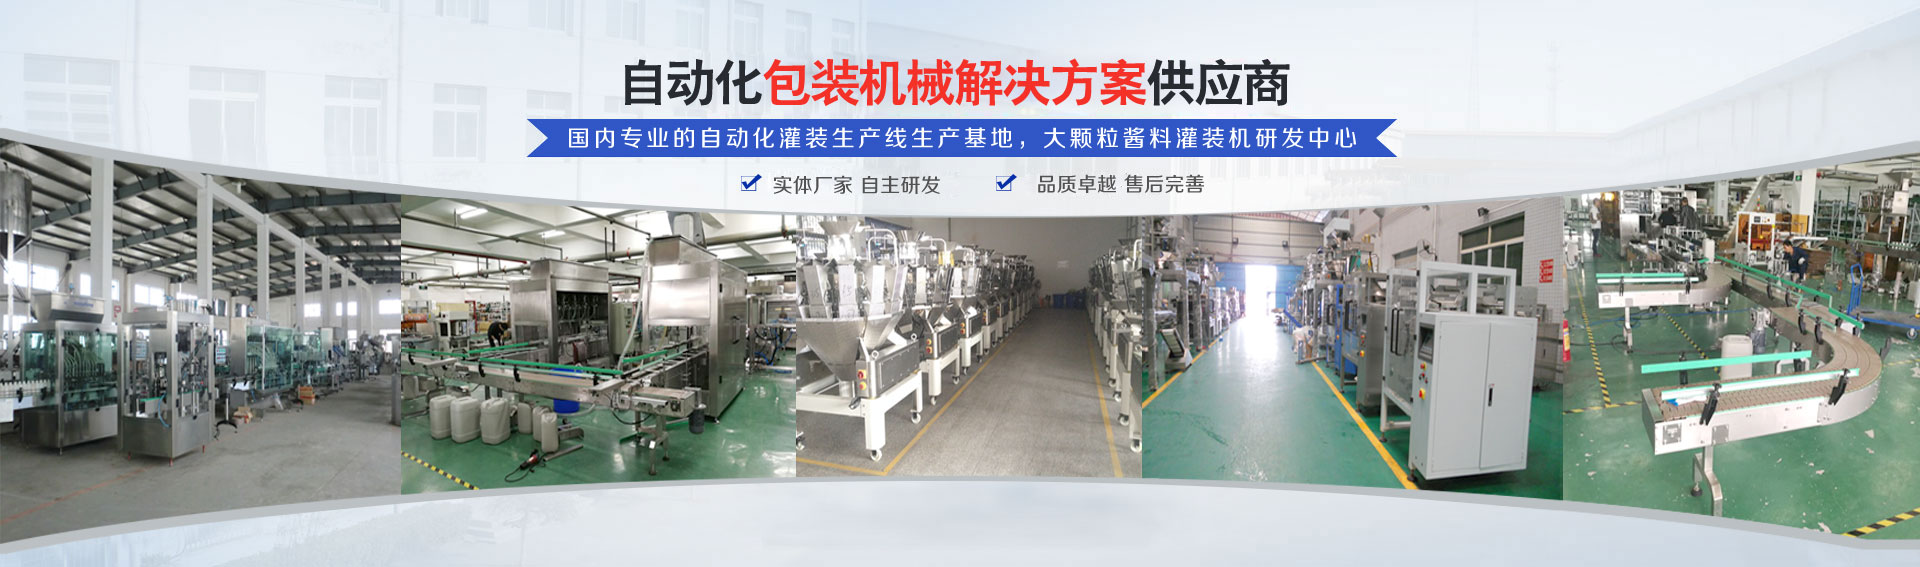 专(zhuan)业(ye)的自动化灌装机生产(chan)线研发基地(di)